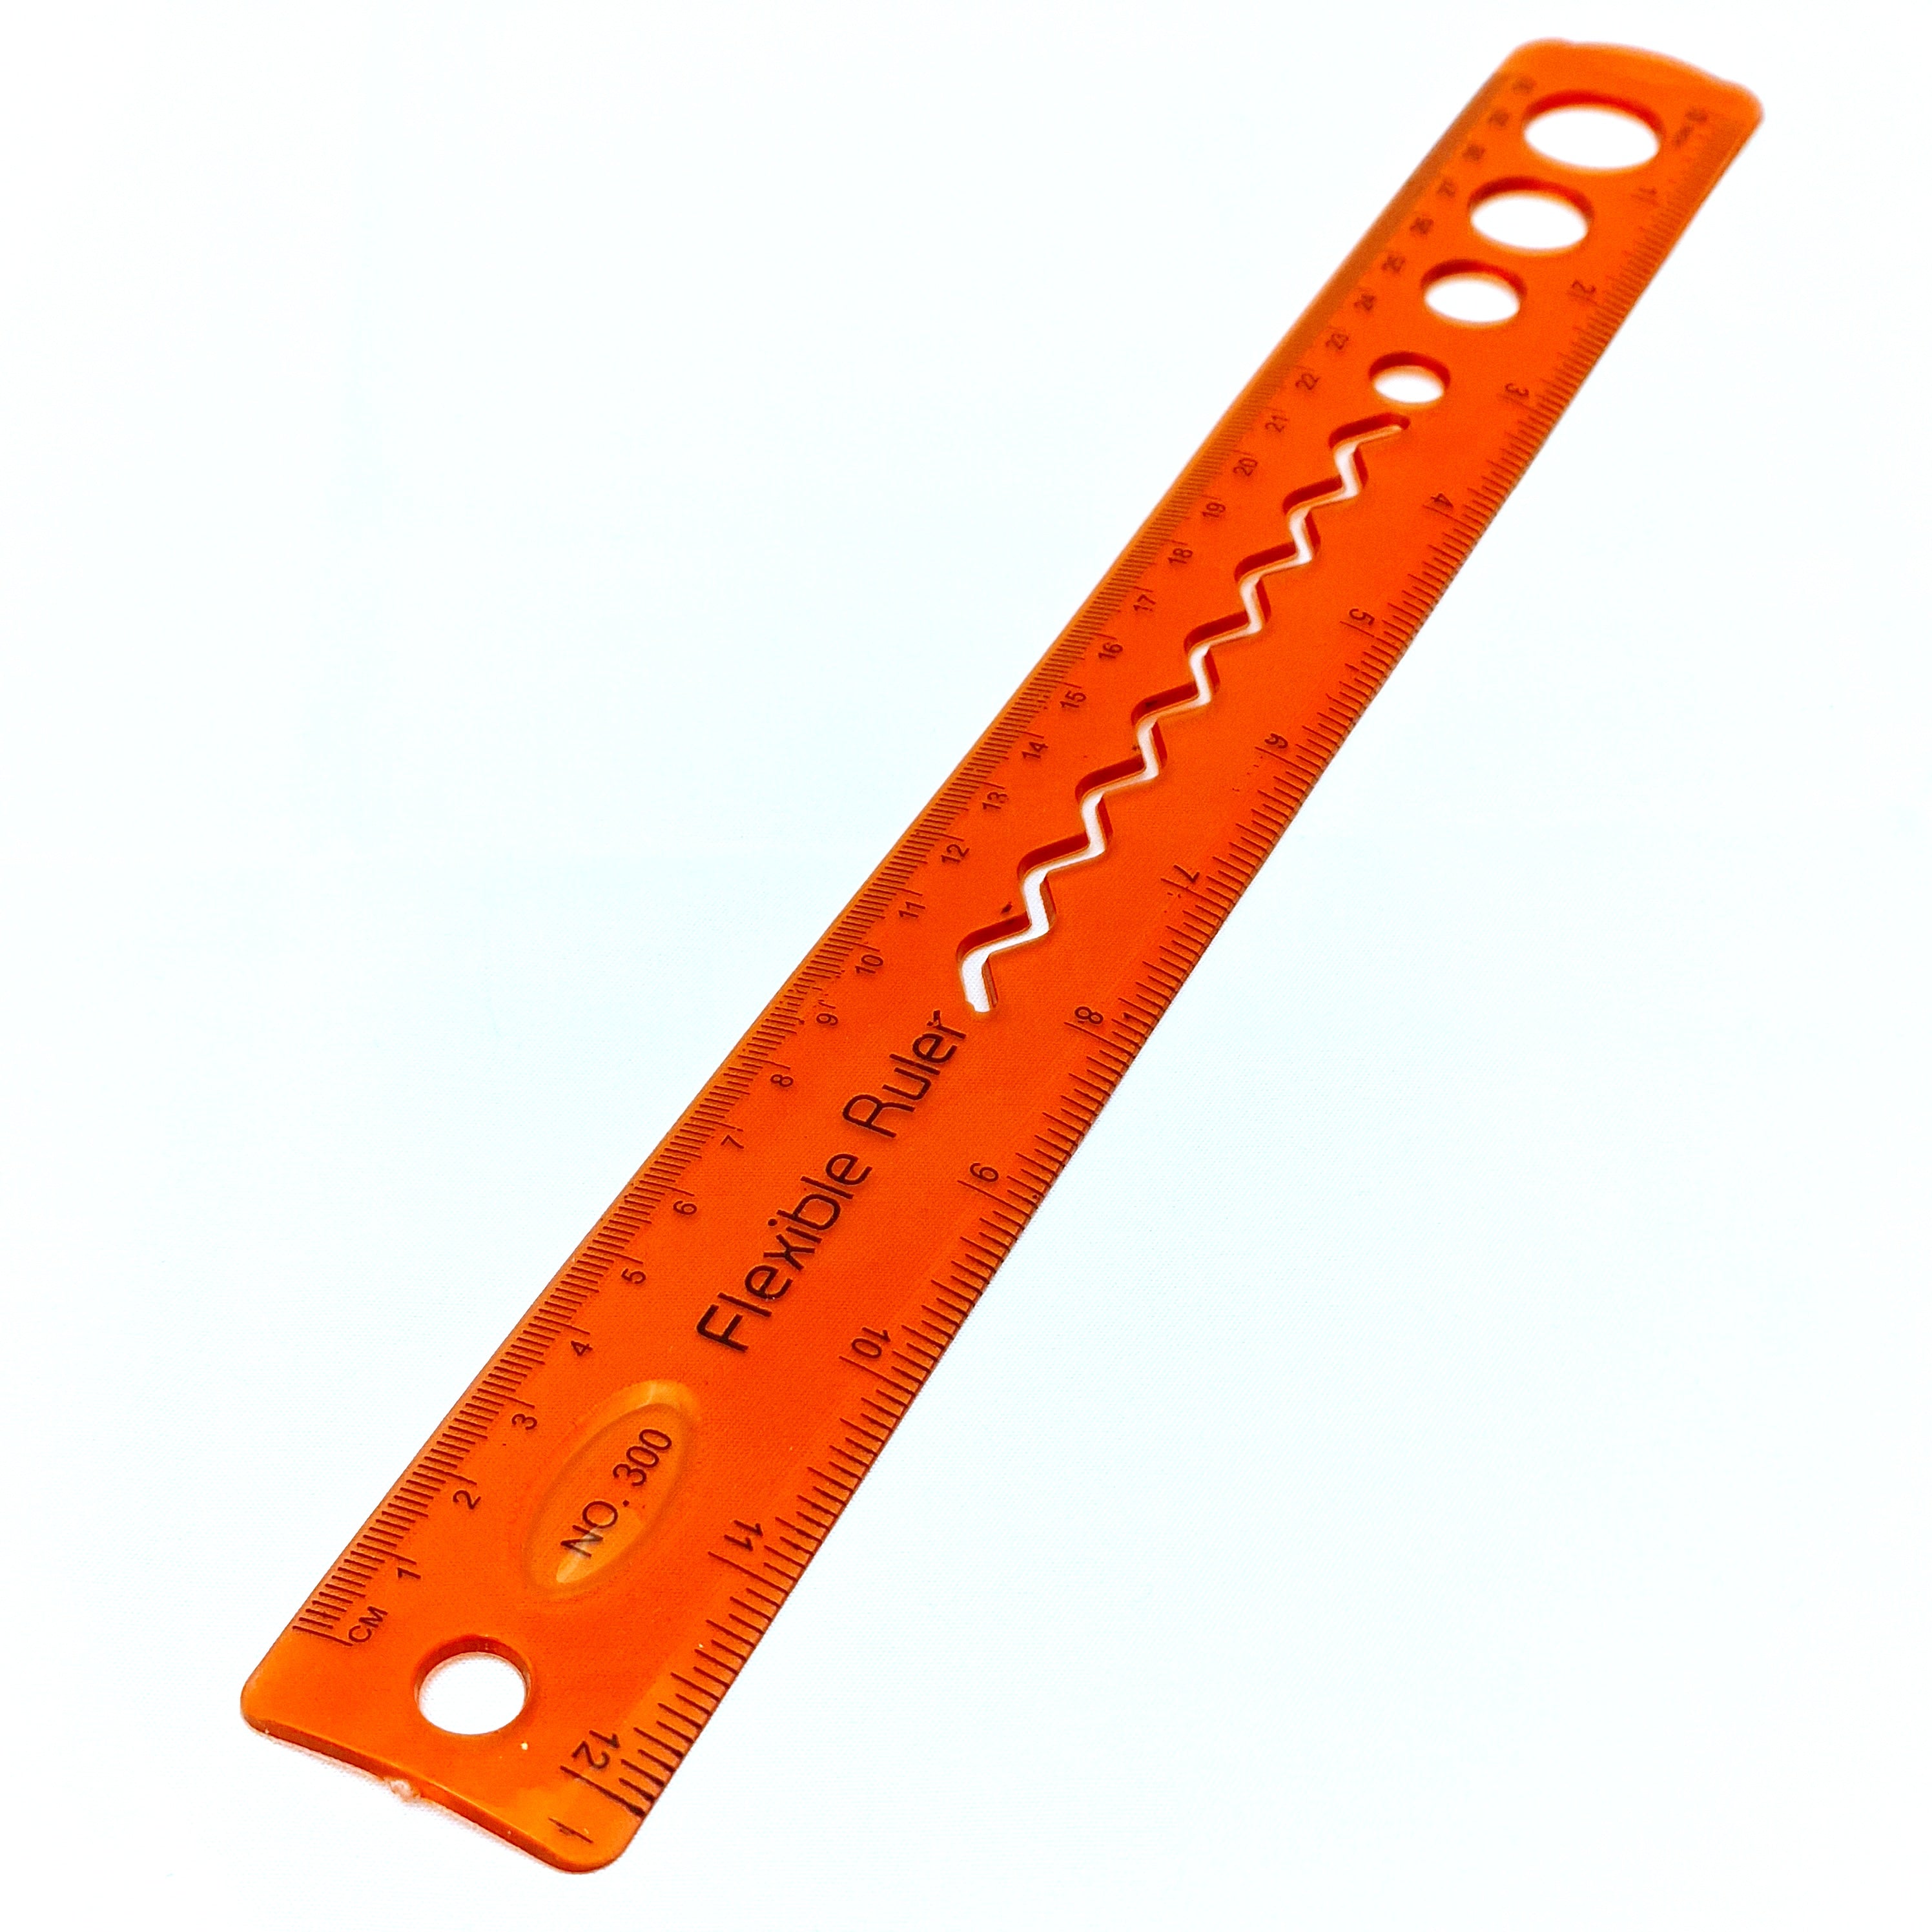 MajorCrafts Red 30cm 12inch Flexible Bending Ruler